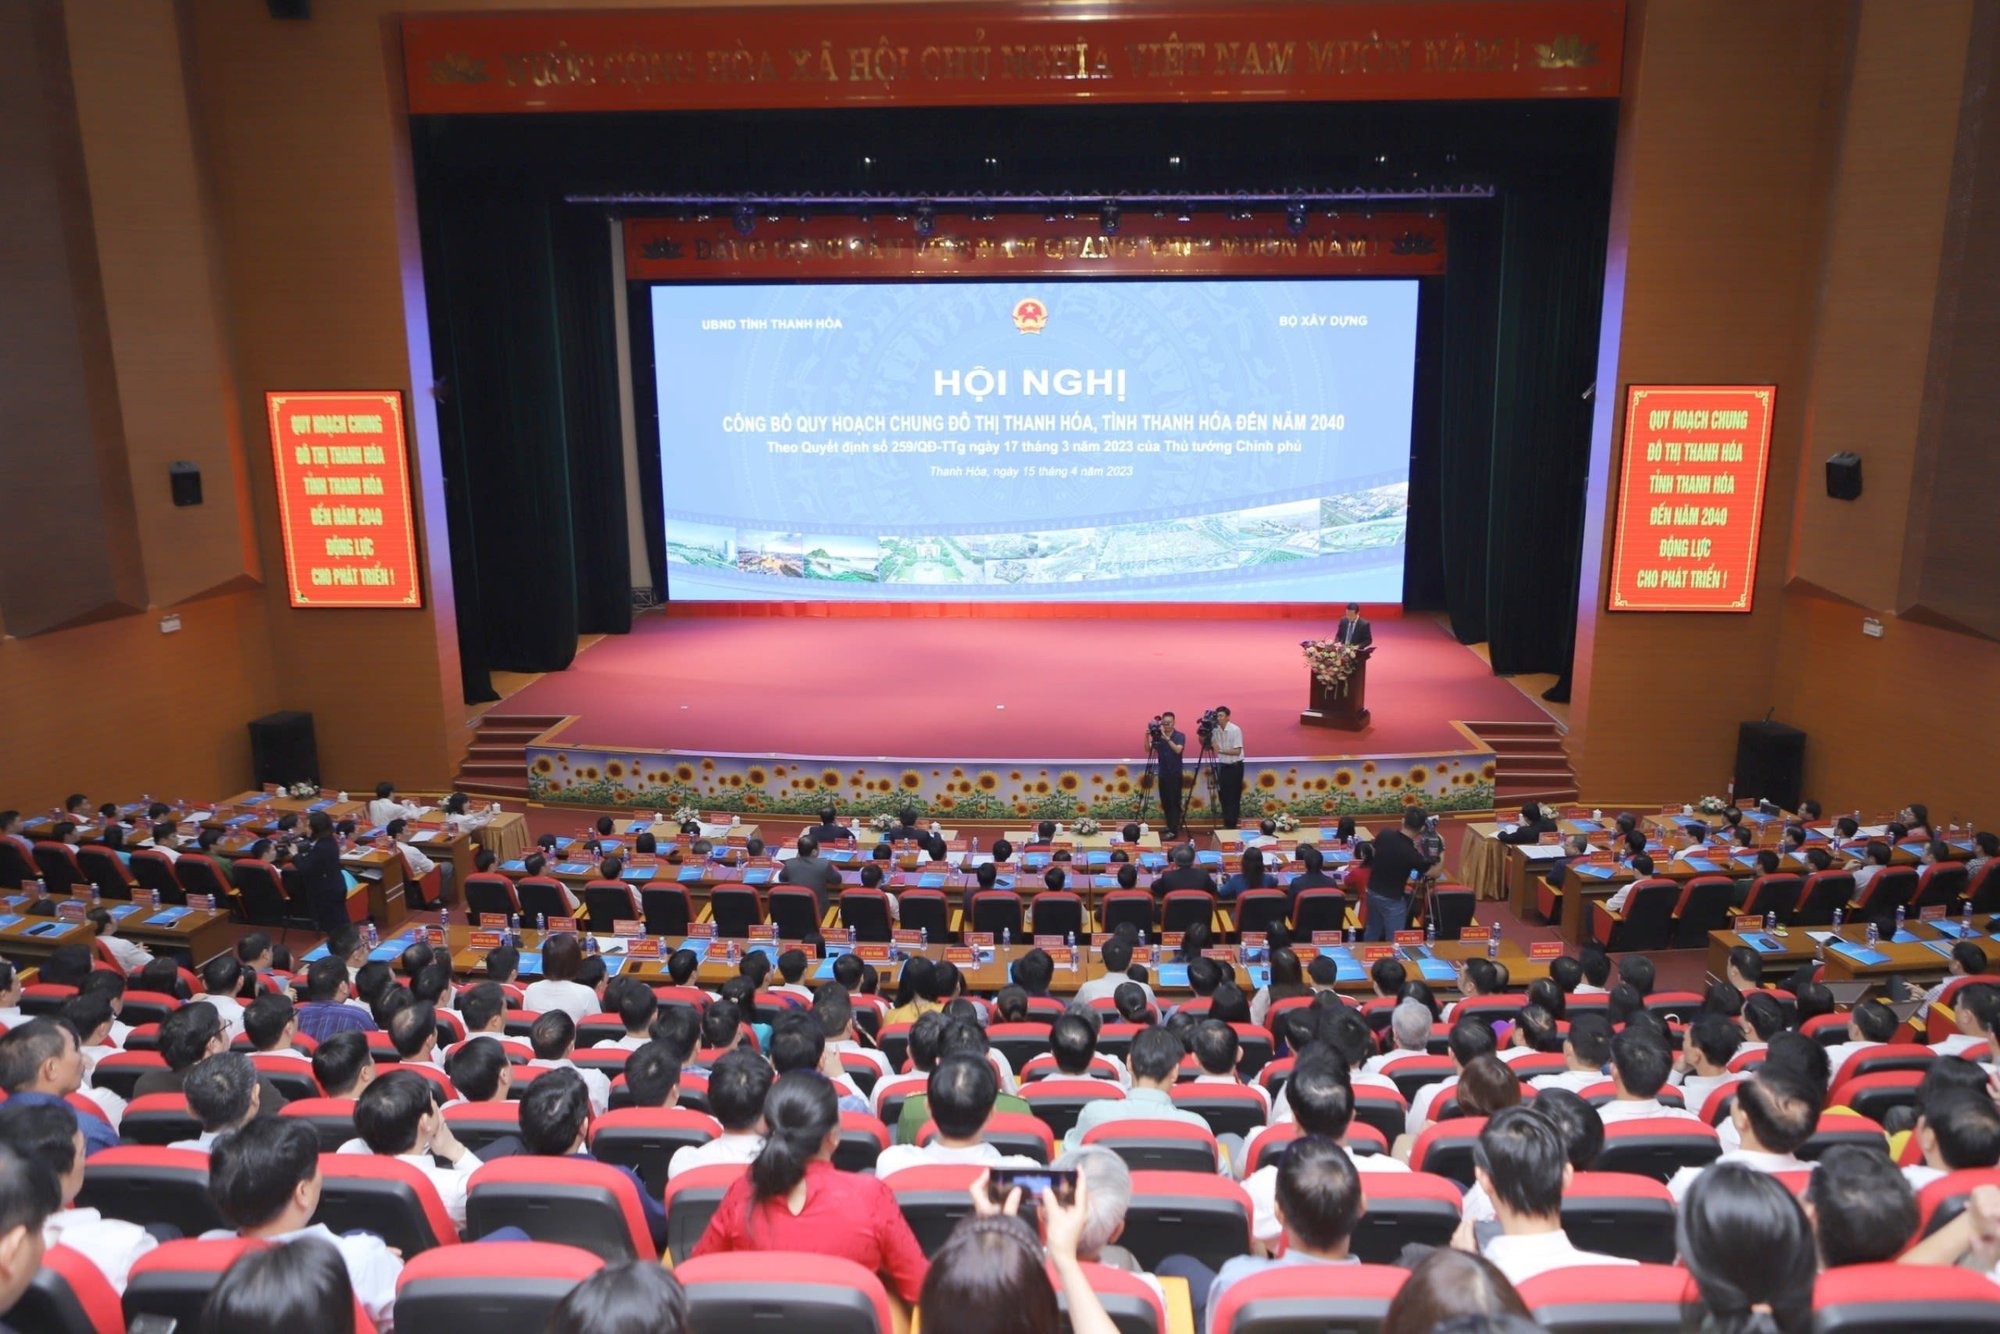 Bài phát biểu của Chủ tịch UBND tỉnh tại Hội nghị công bố quy hoạch chung đô thị Thanh Hóa, tỉnh Thanh Hóa đến năm 2040 - Ảnh 2.